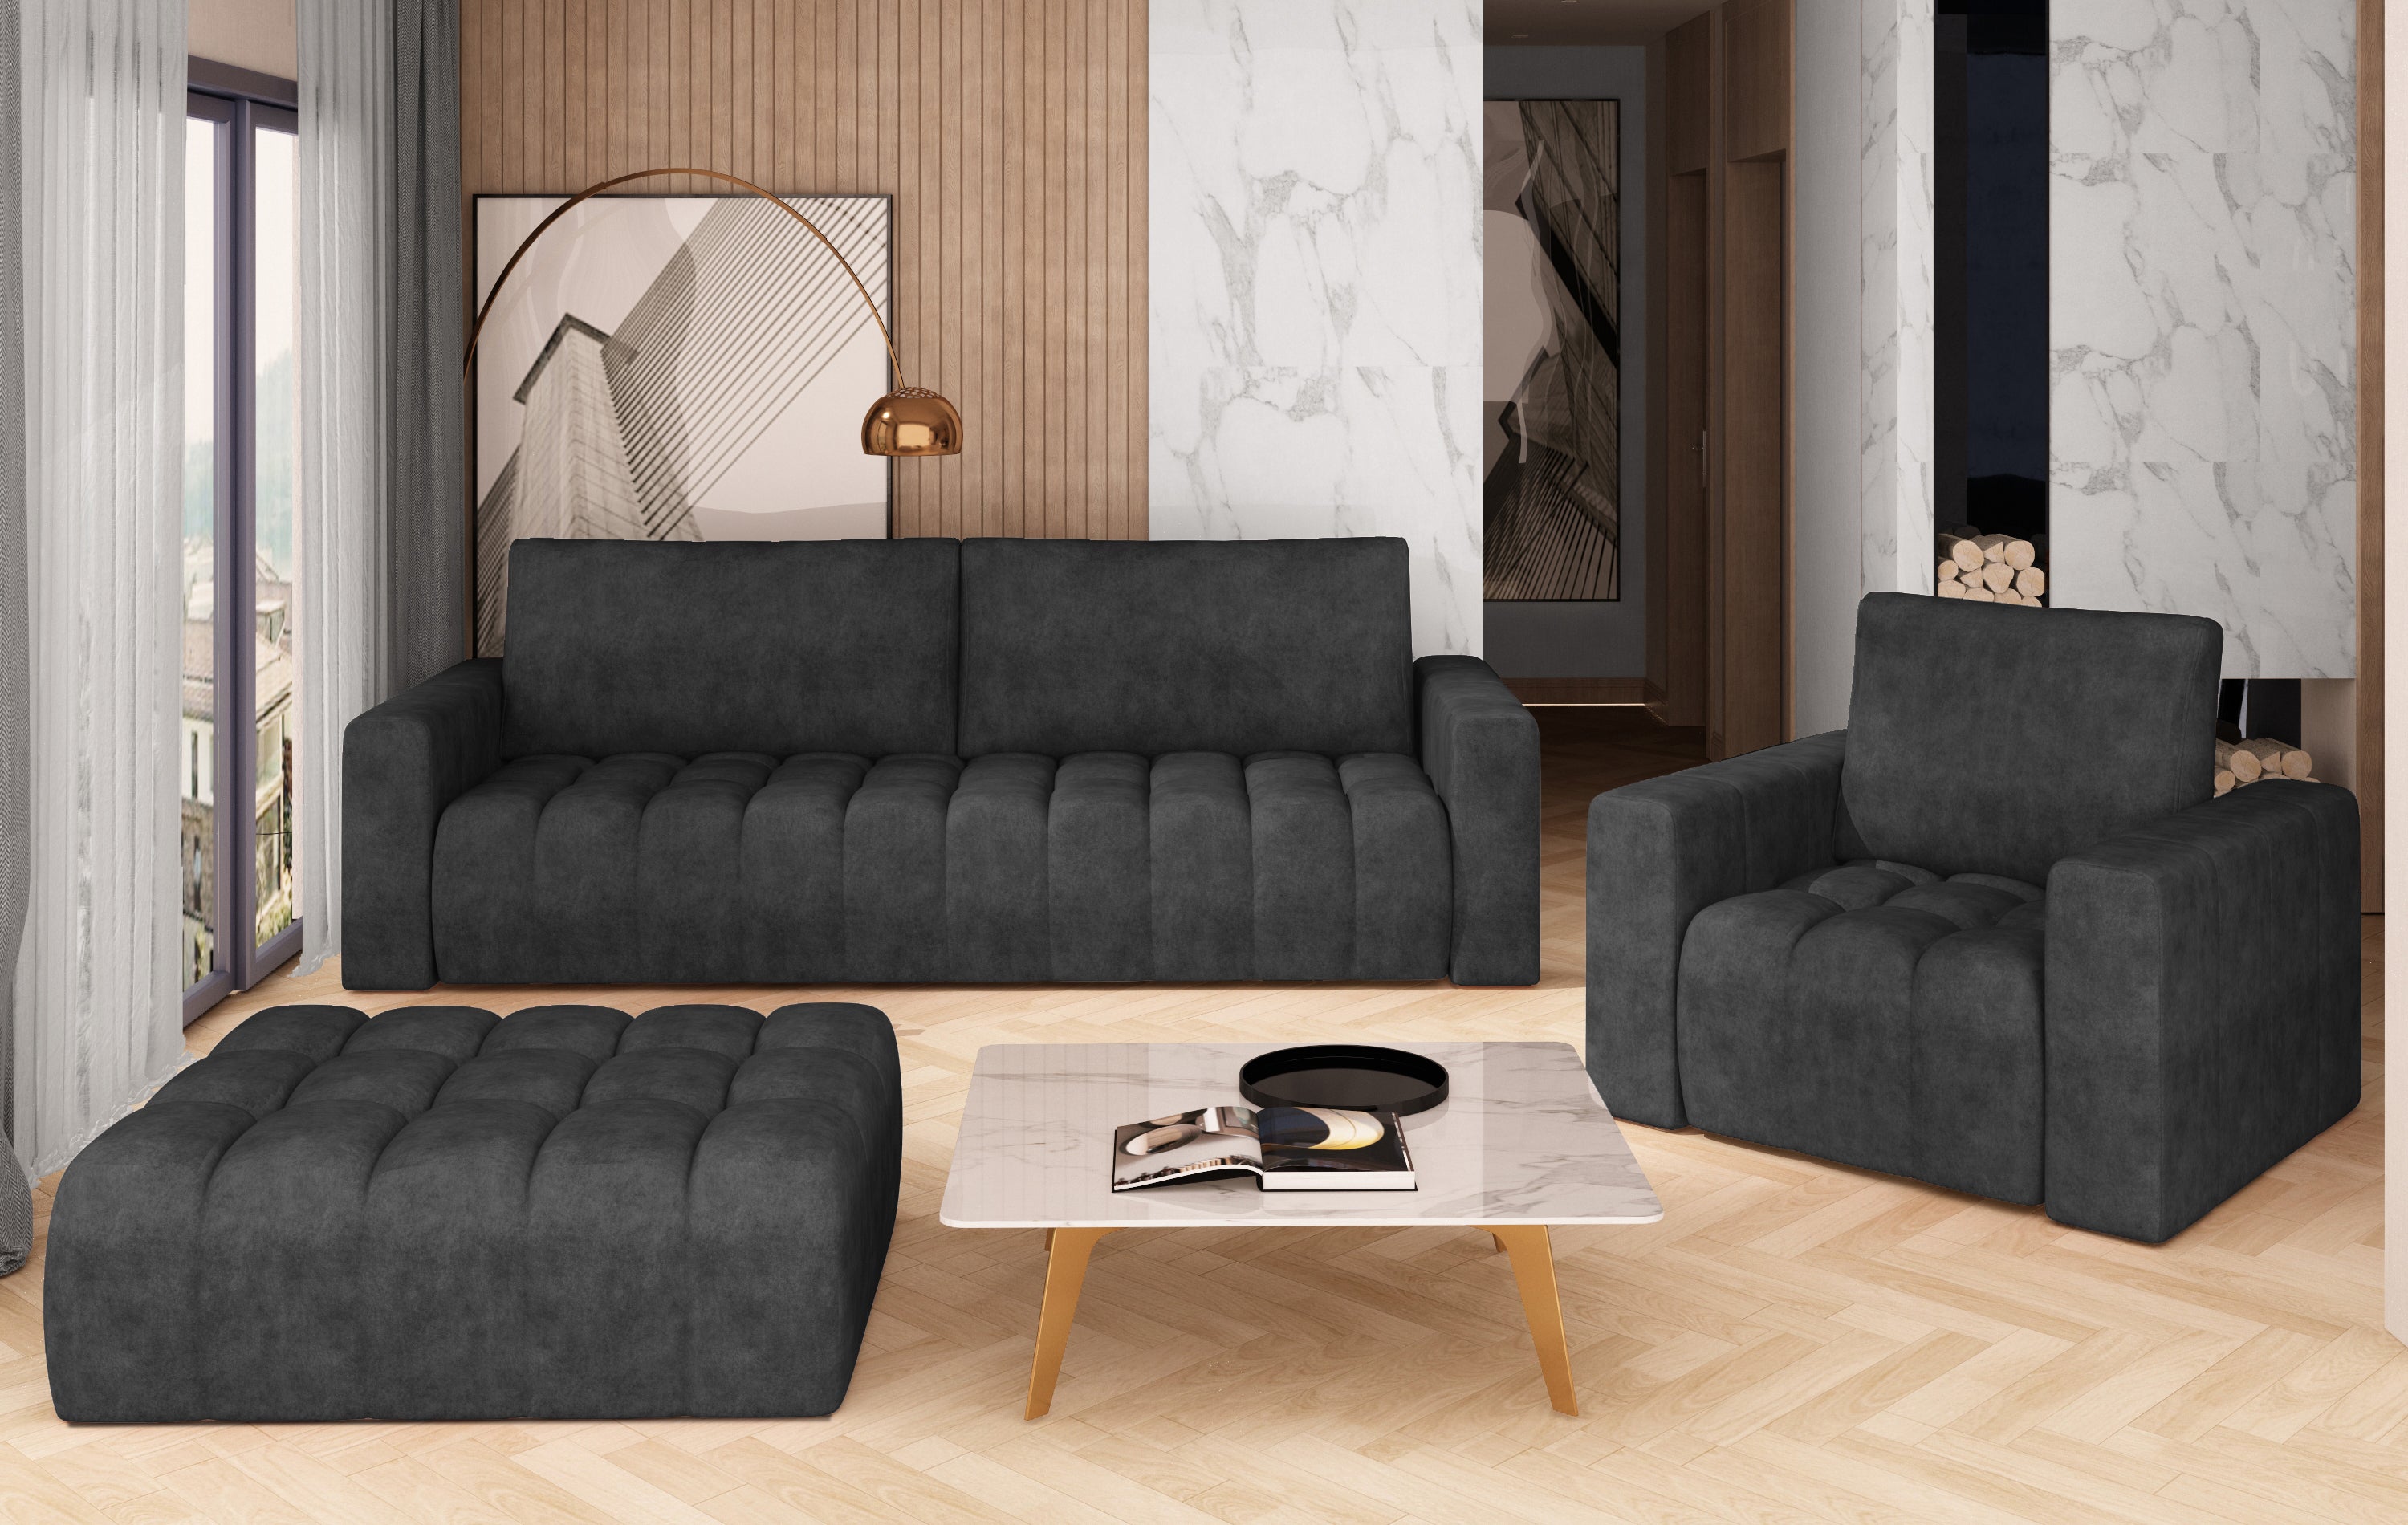 Conjunto de sofás 3+2 en tela sintética gris - Liege - Don Baraton: tienda  de sofás, colchones y muebles